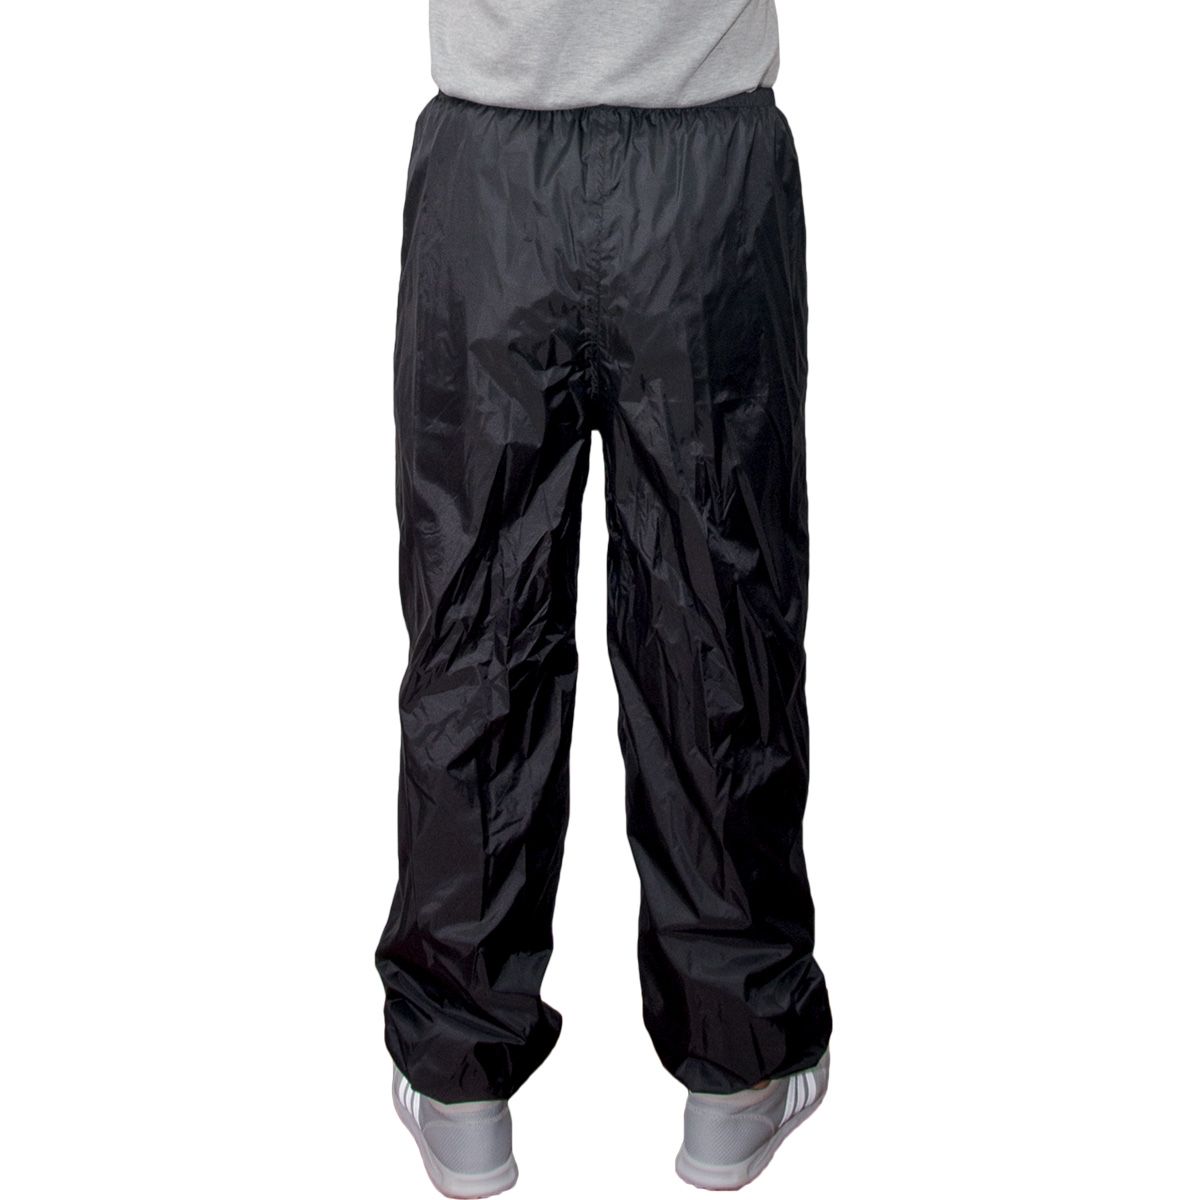 Rainproof Waterproof Trousers TJMarvin E52 Black